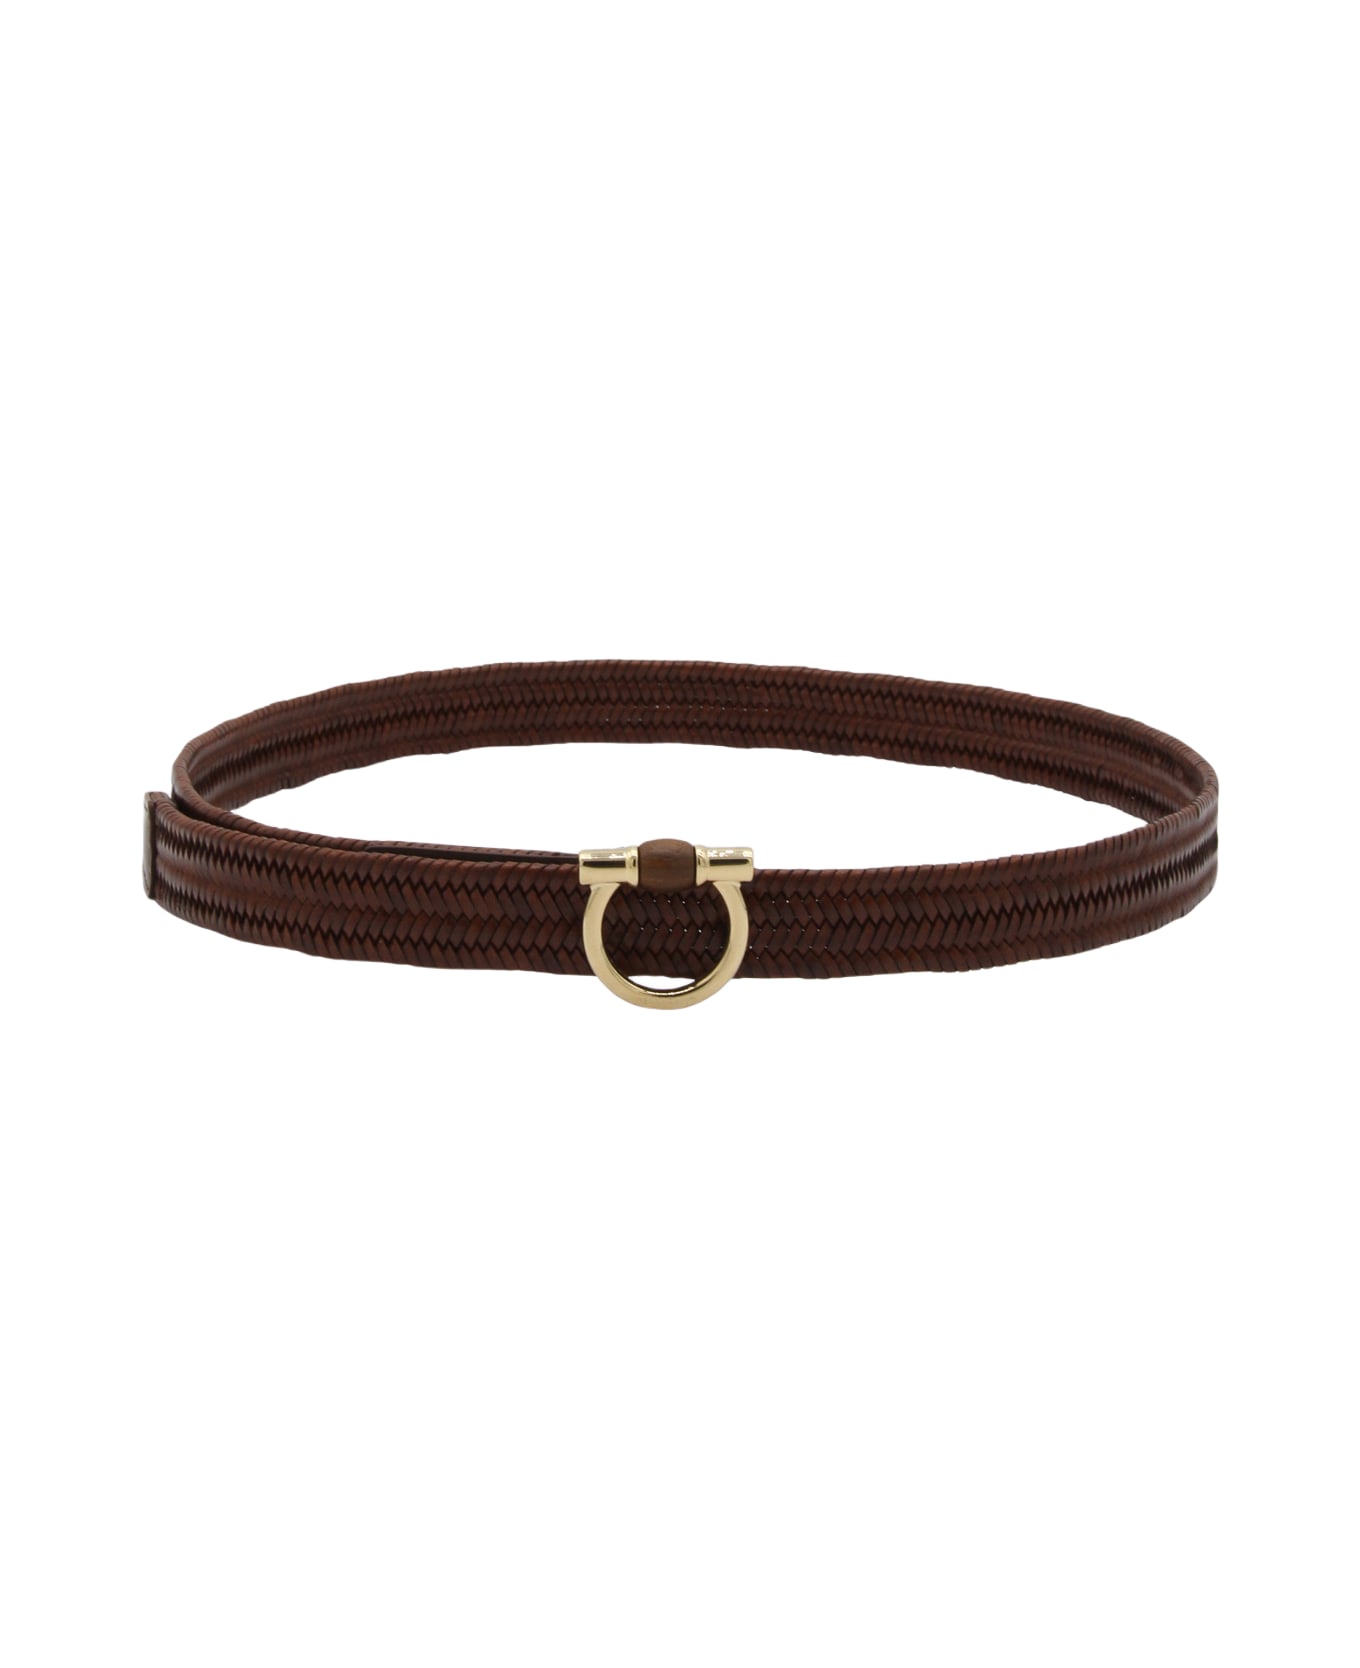 Ferragamo Brown Leather Belt - COCOA BROWN || COCOA BROWN